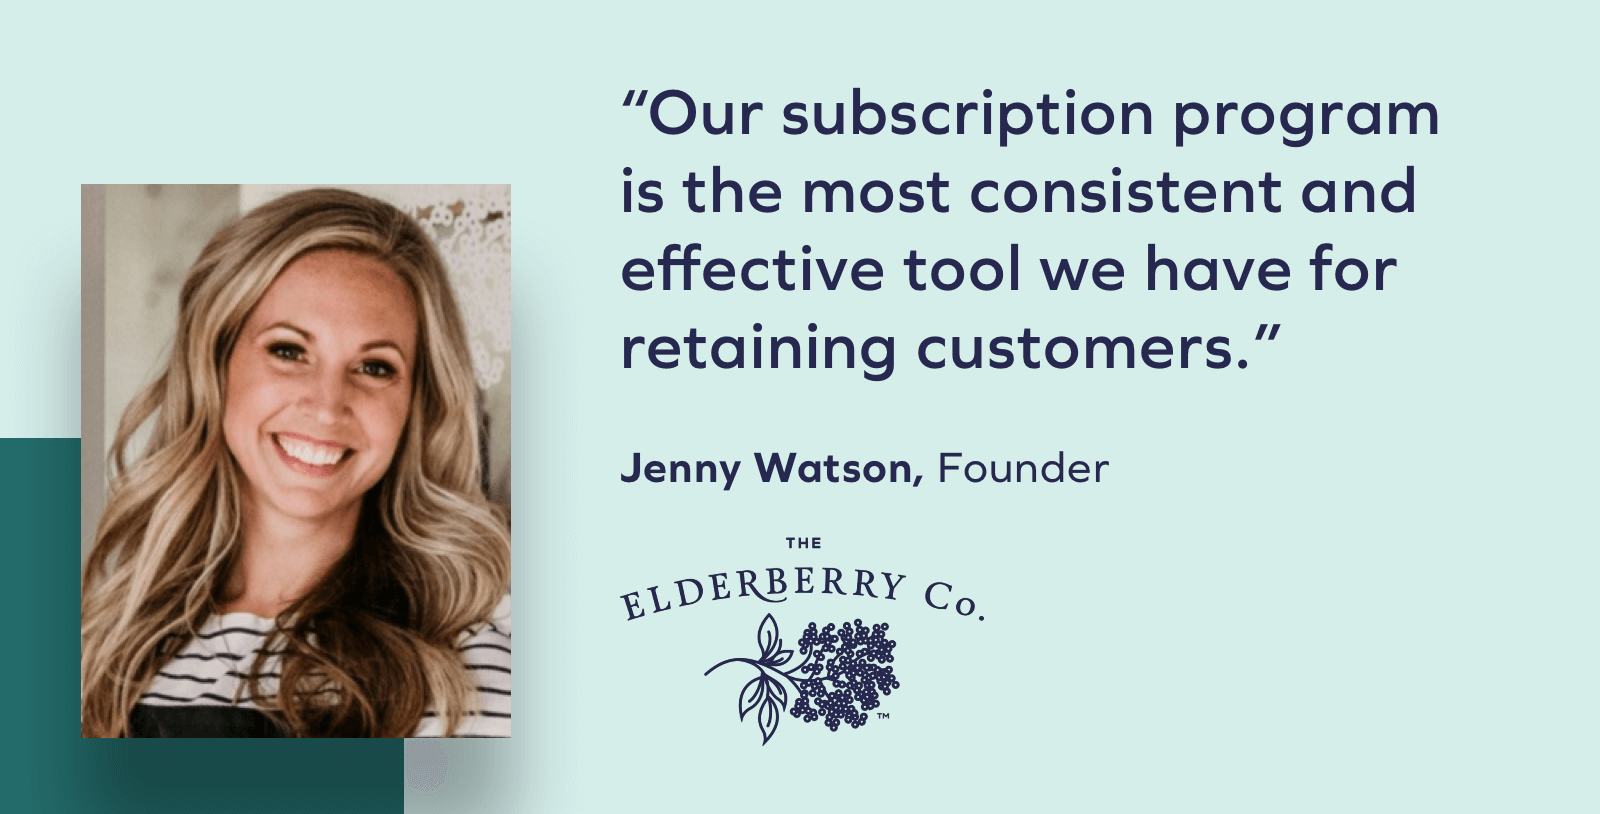 The Elderberry Co. founder, Jenny Watson